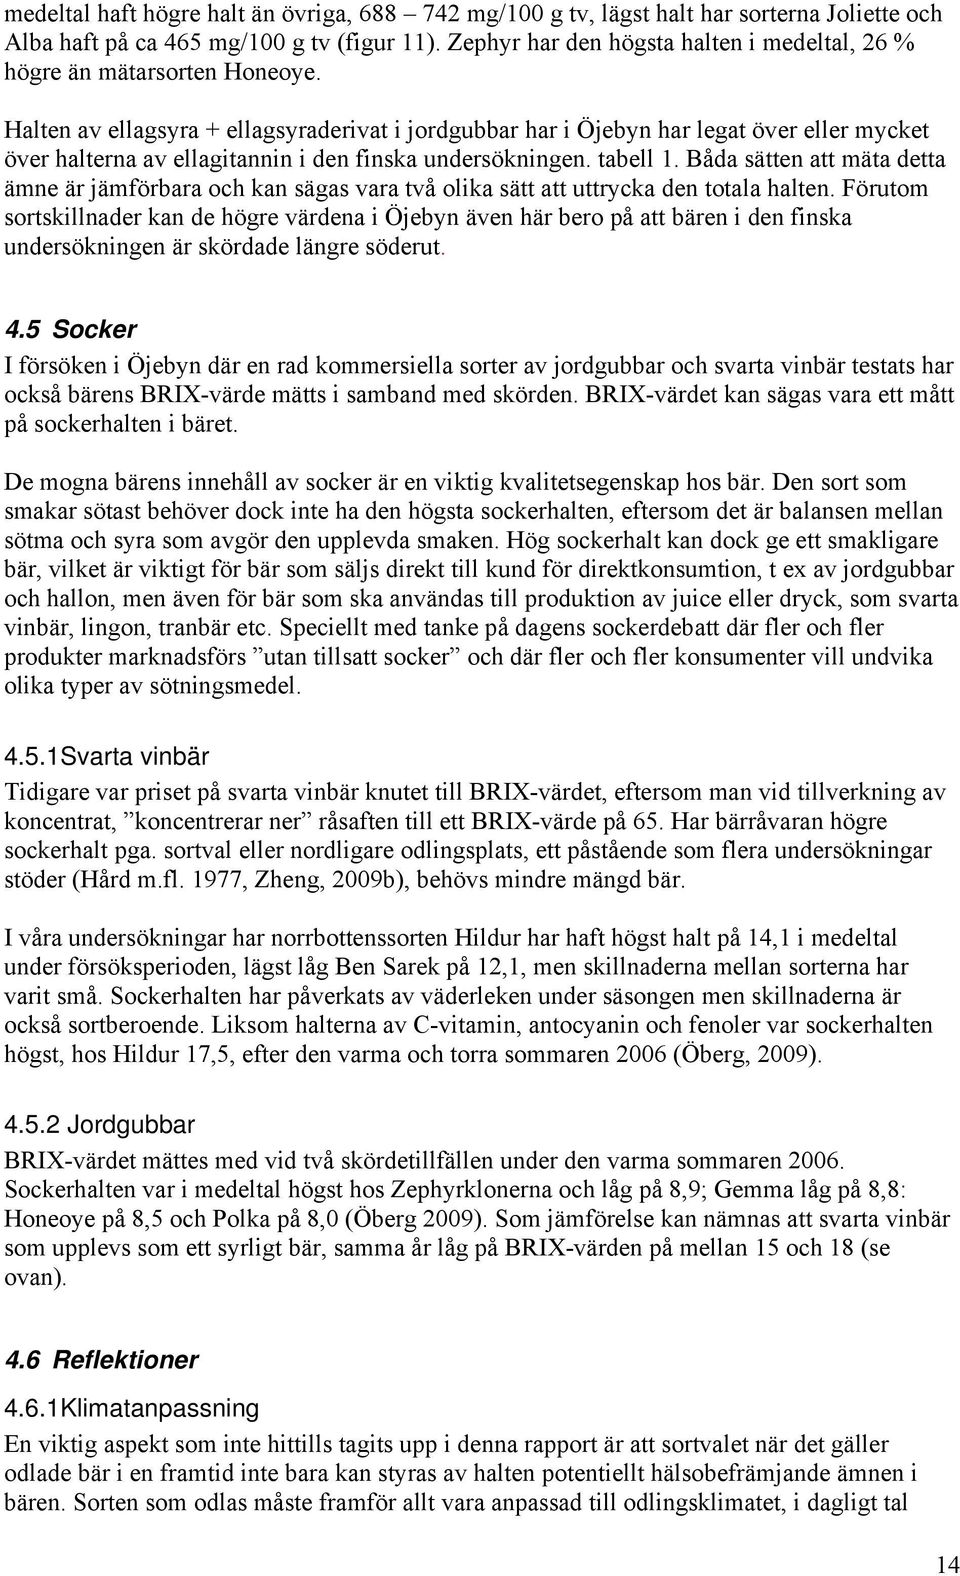 Halten av ellagsyra + ellagsyraderivat i jordgubbar har i Öjebyn har legat över eller mycket över halterna av ellagitannin i den finska undersökningen. tabell 1.